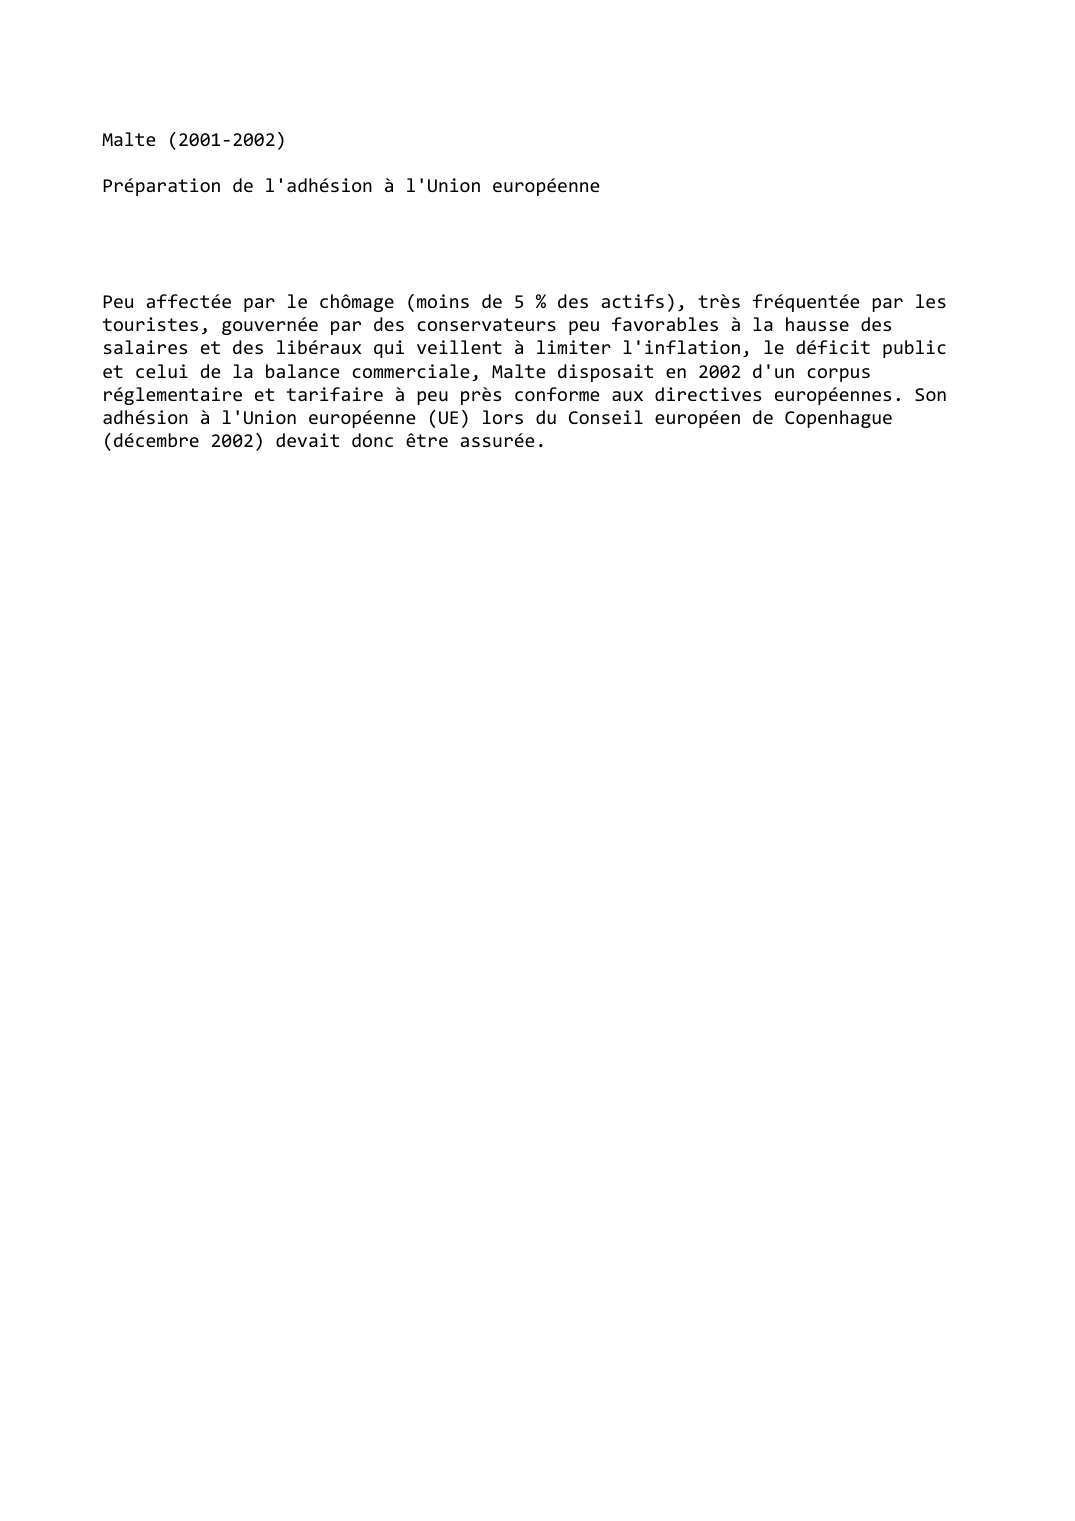 Prévisualisation du document Malte (2001-2002)